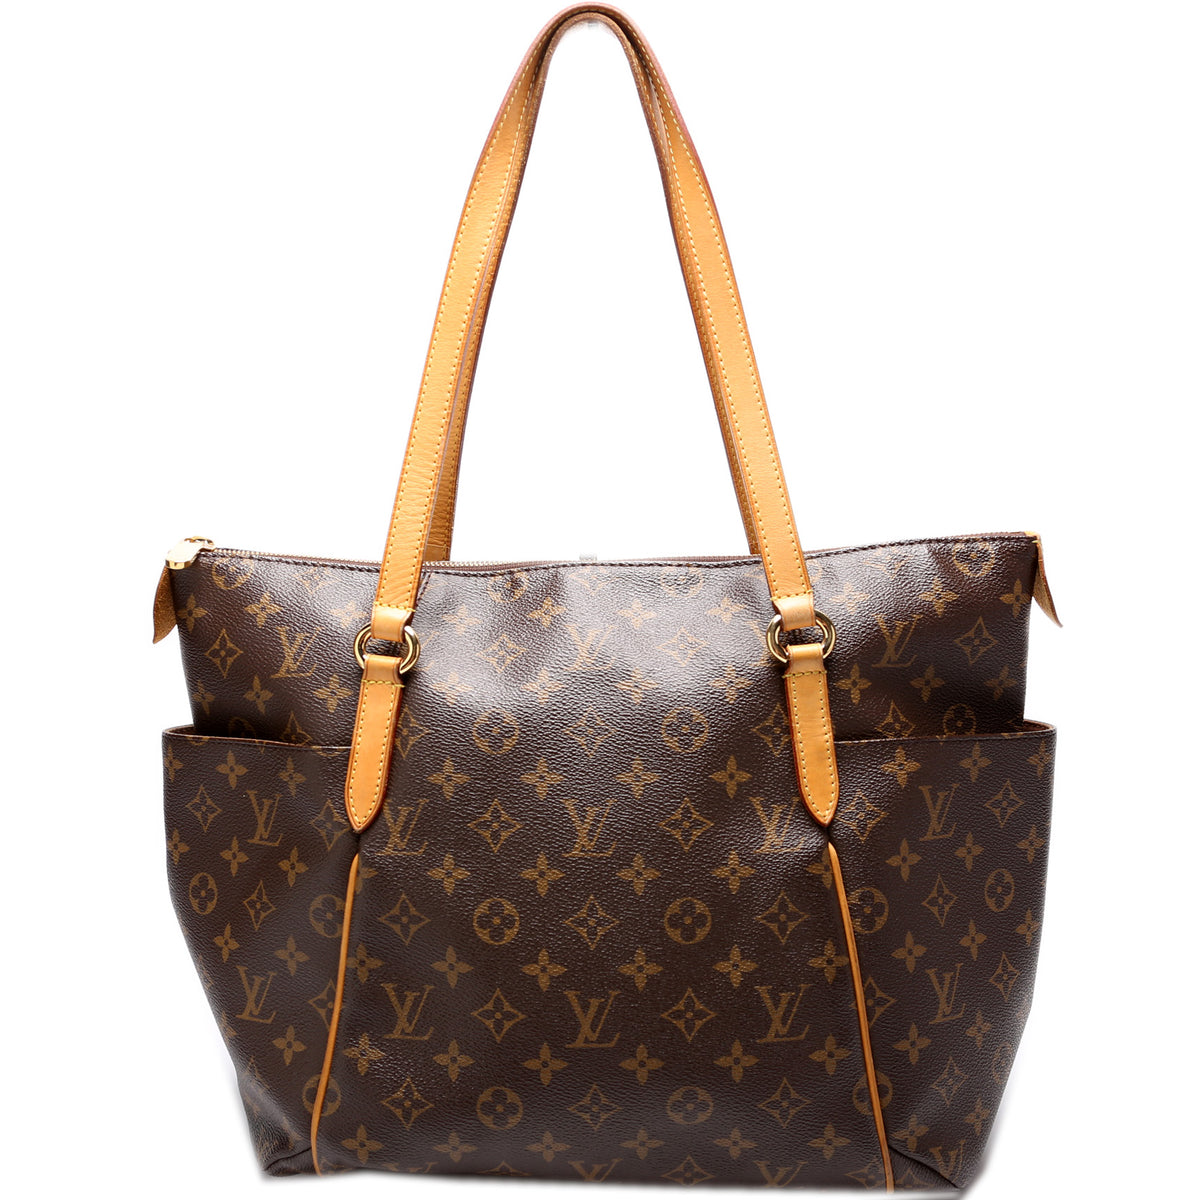 Louis Vuitton Josephine Gm Blue Bag - Satchel 60% off retail